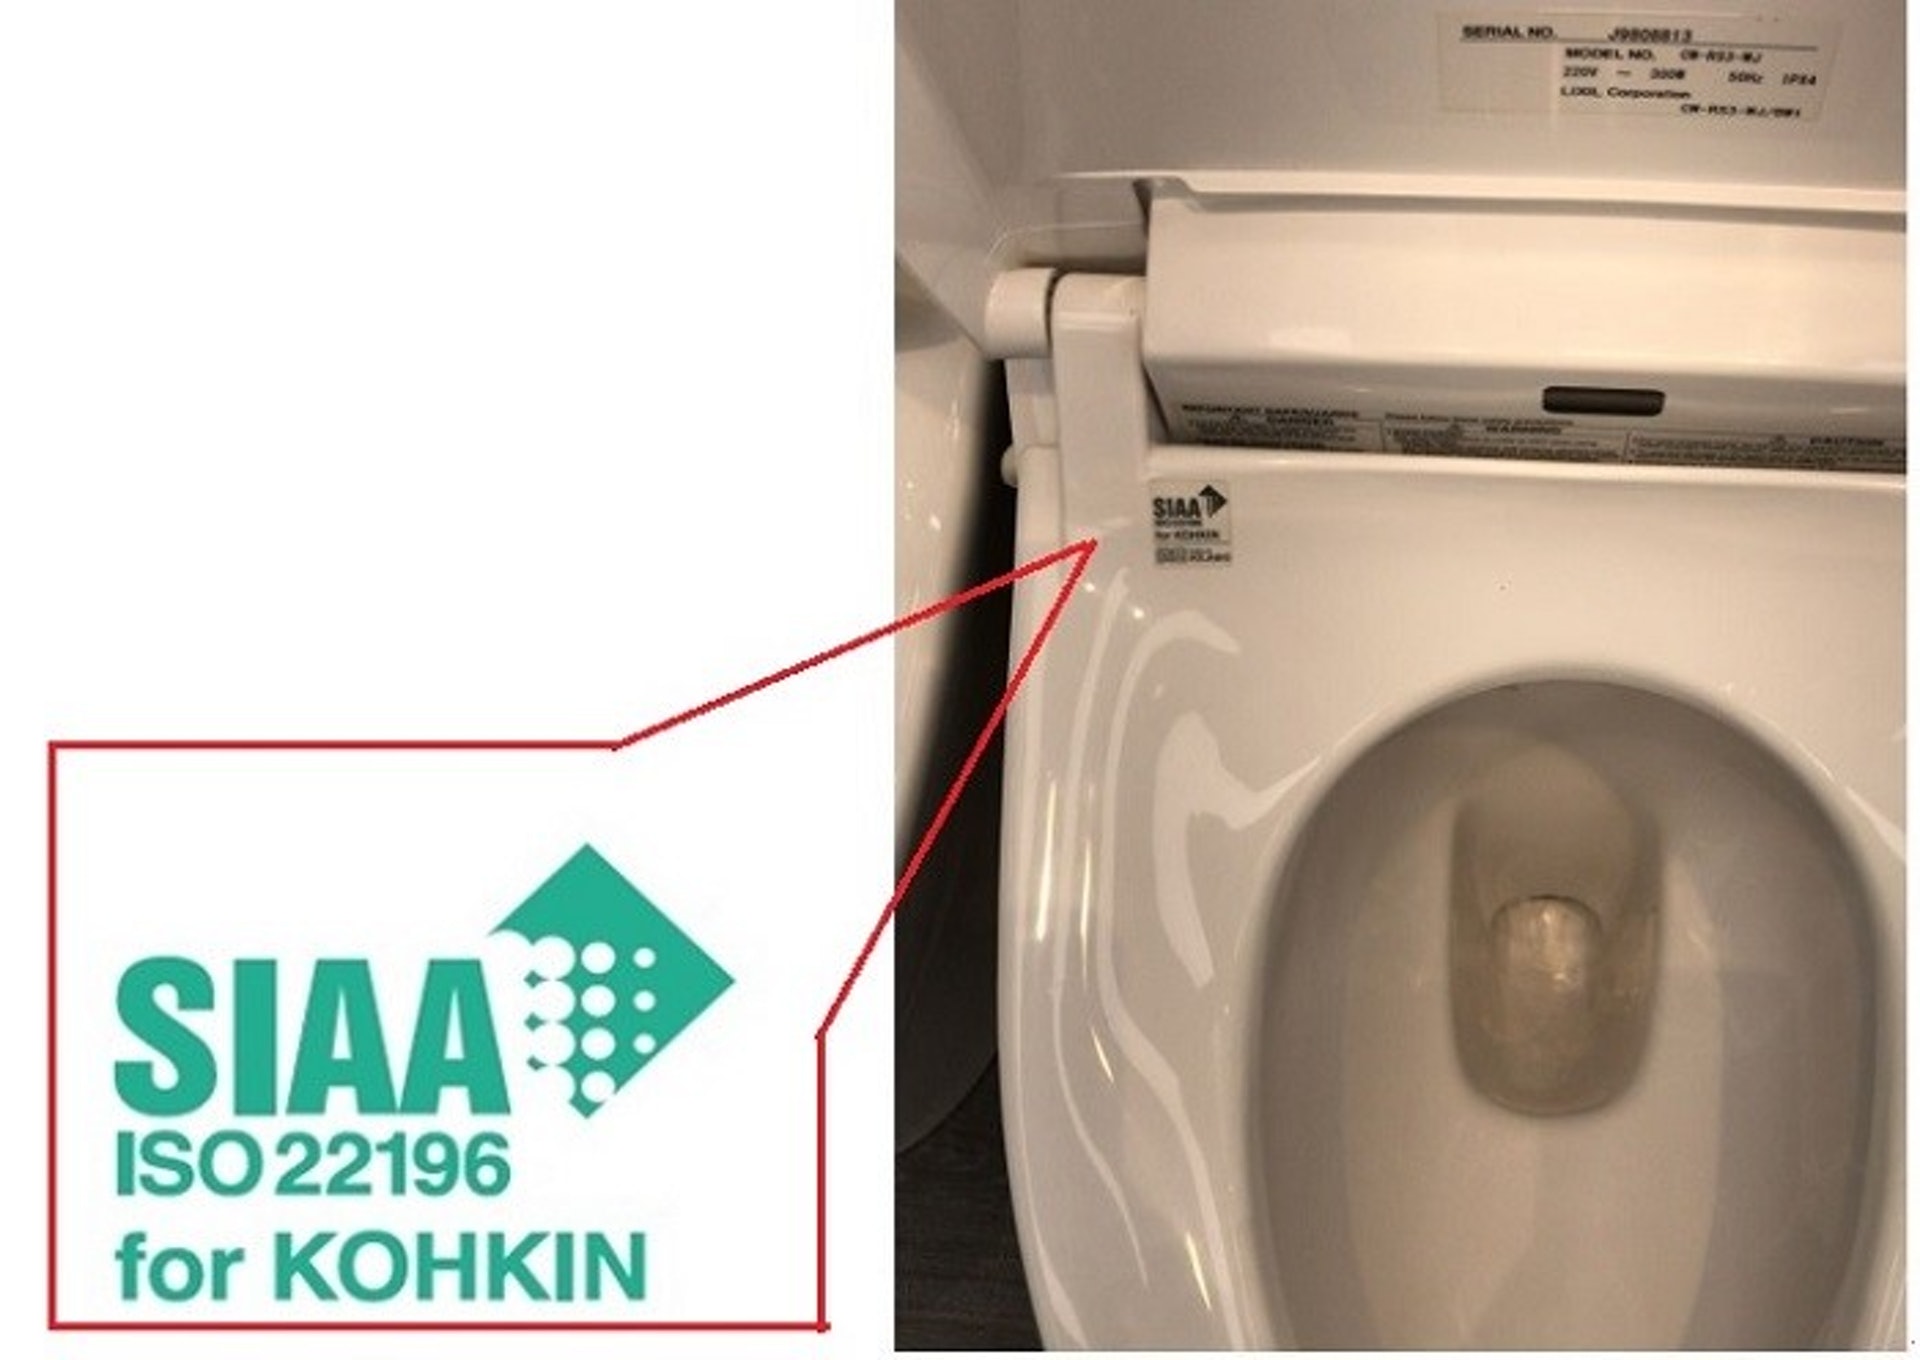 另外有廁板設有抗菌功能，買家可以留意圖中的標誌。圖為日本製智能廁板。（作者提供）